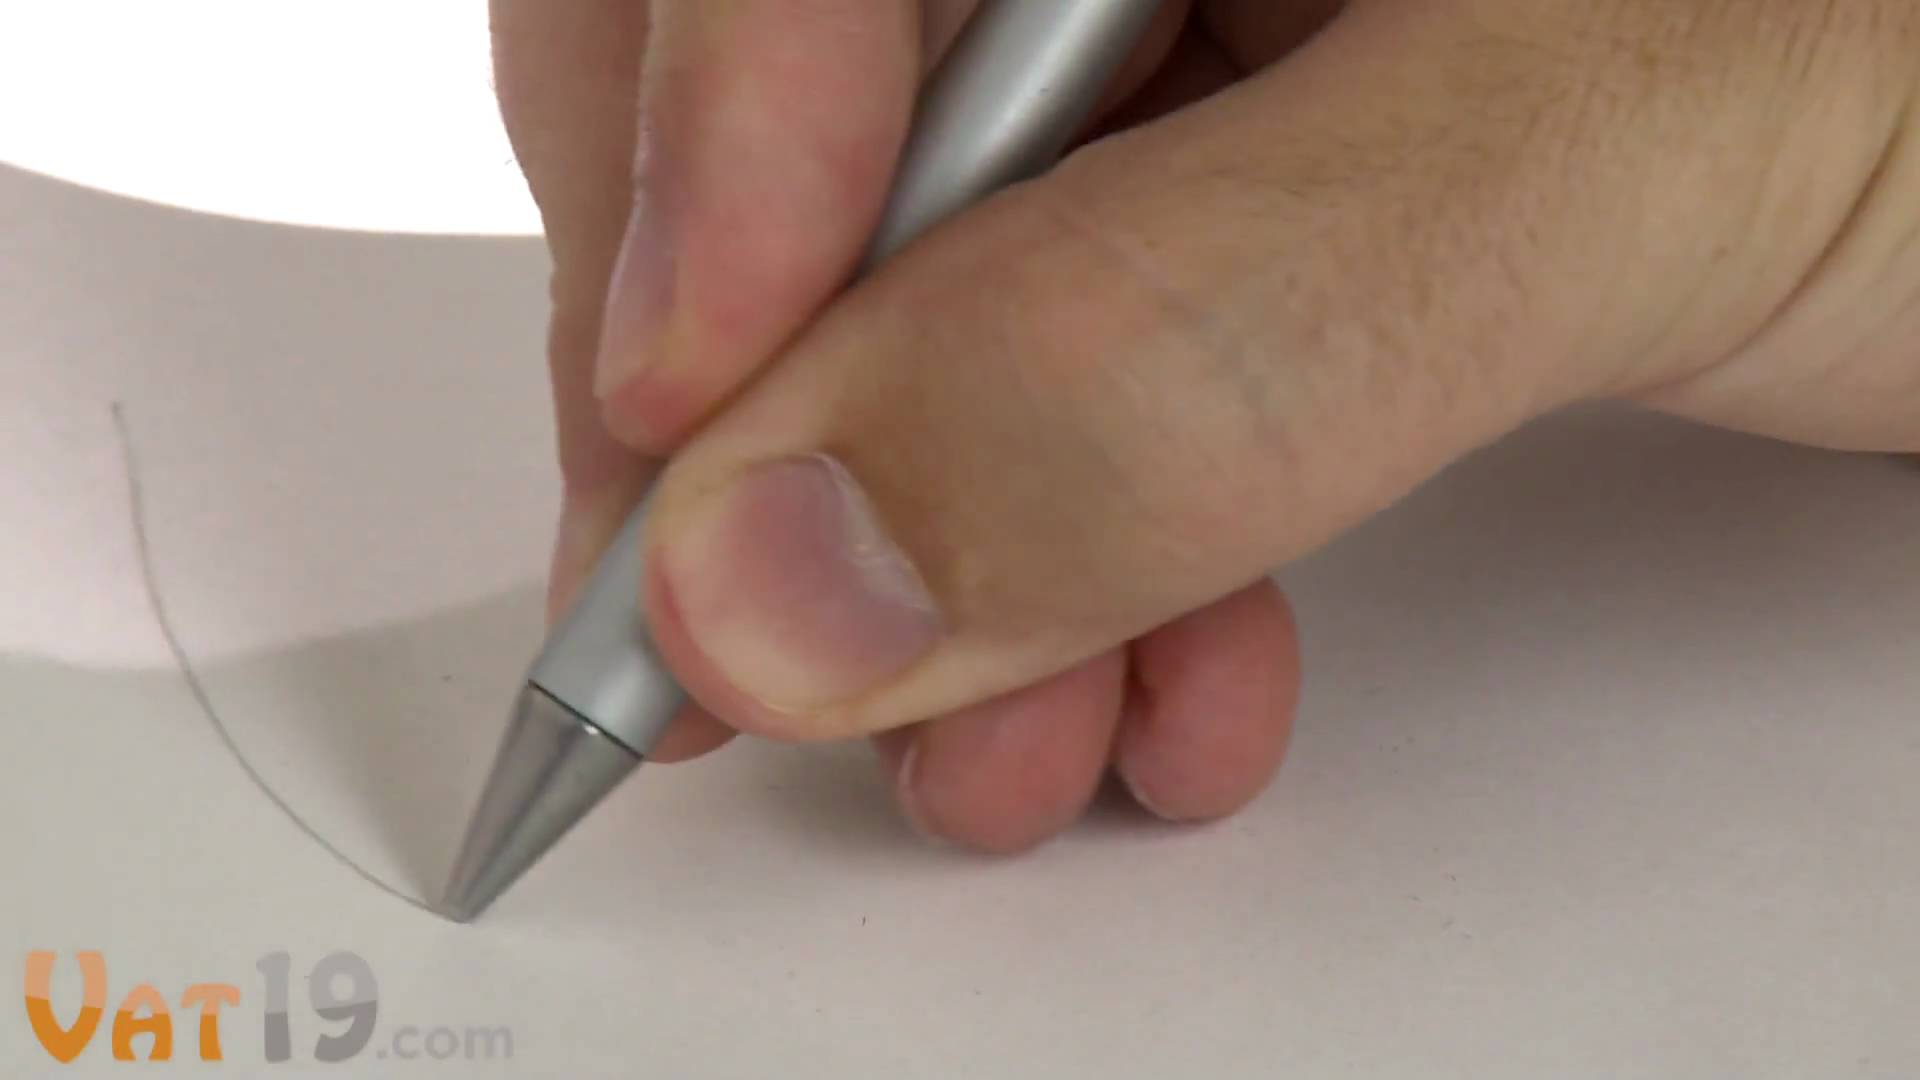 inkless metal pen